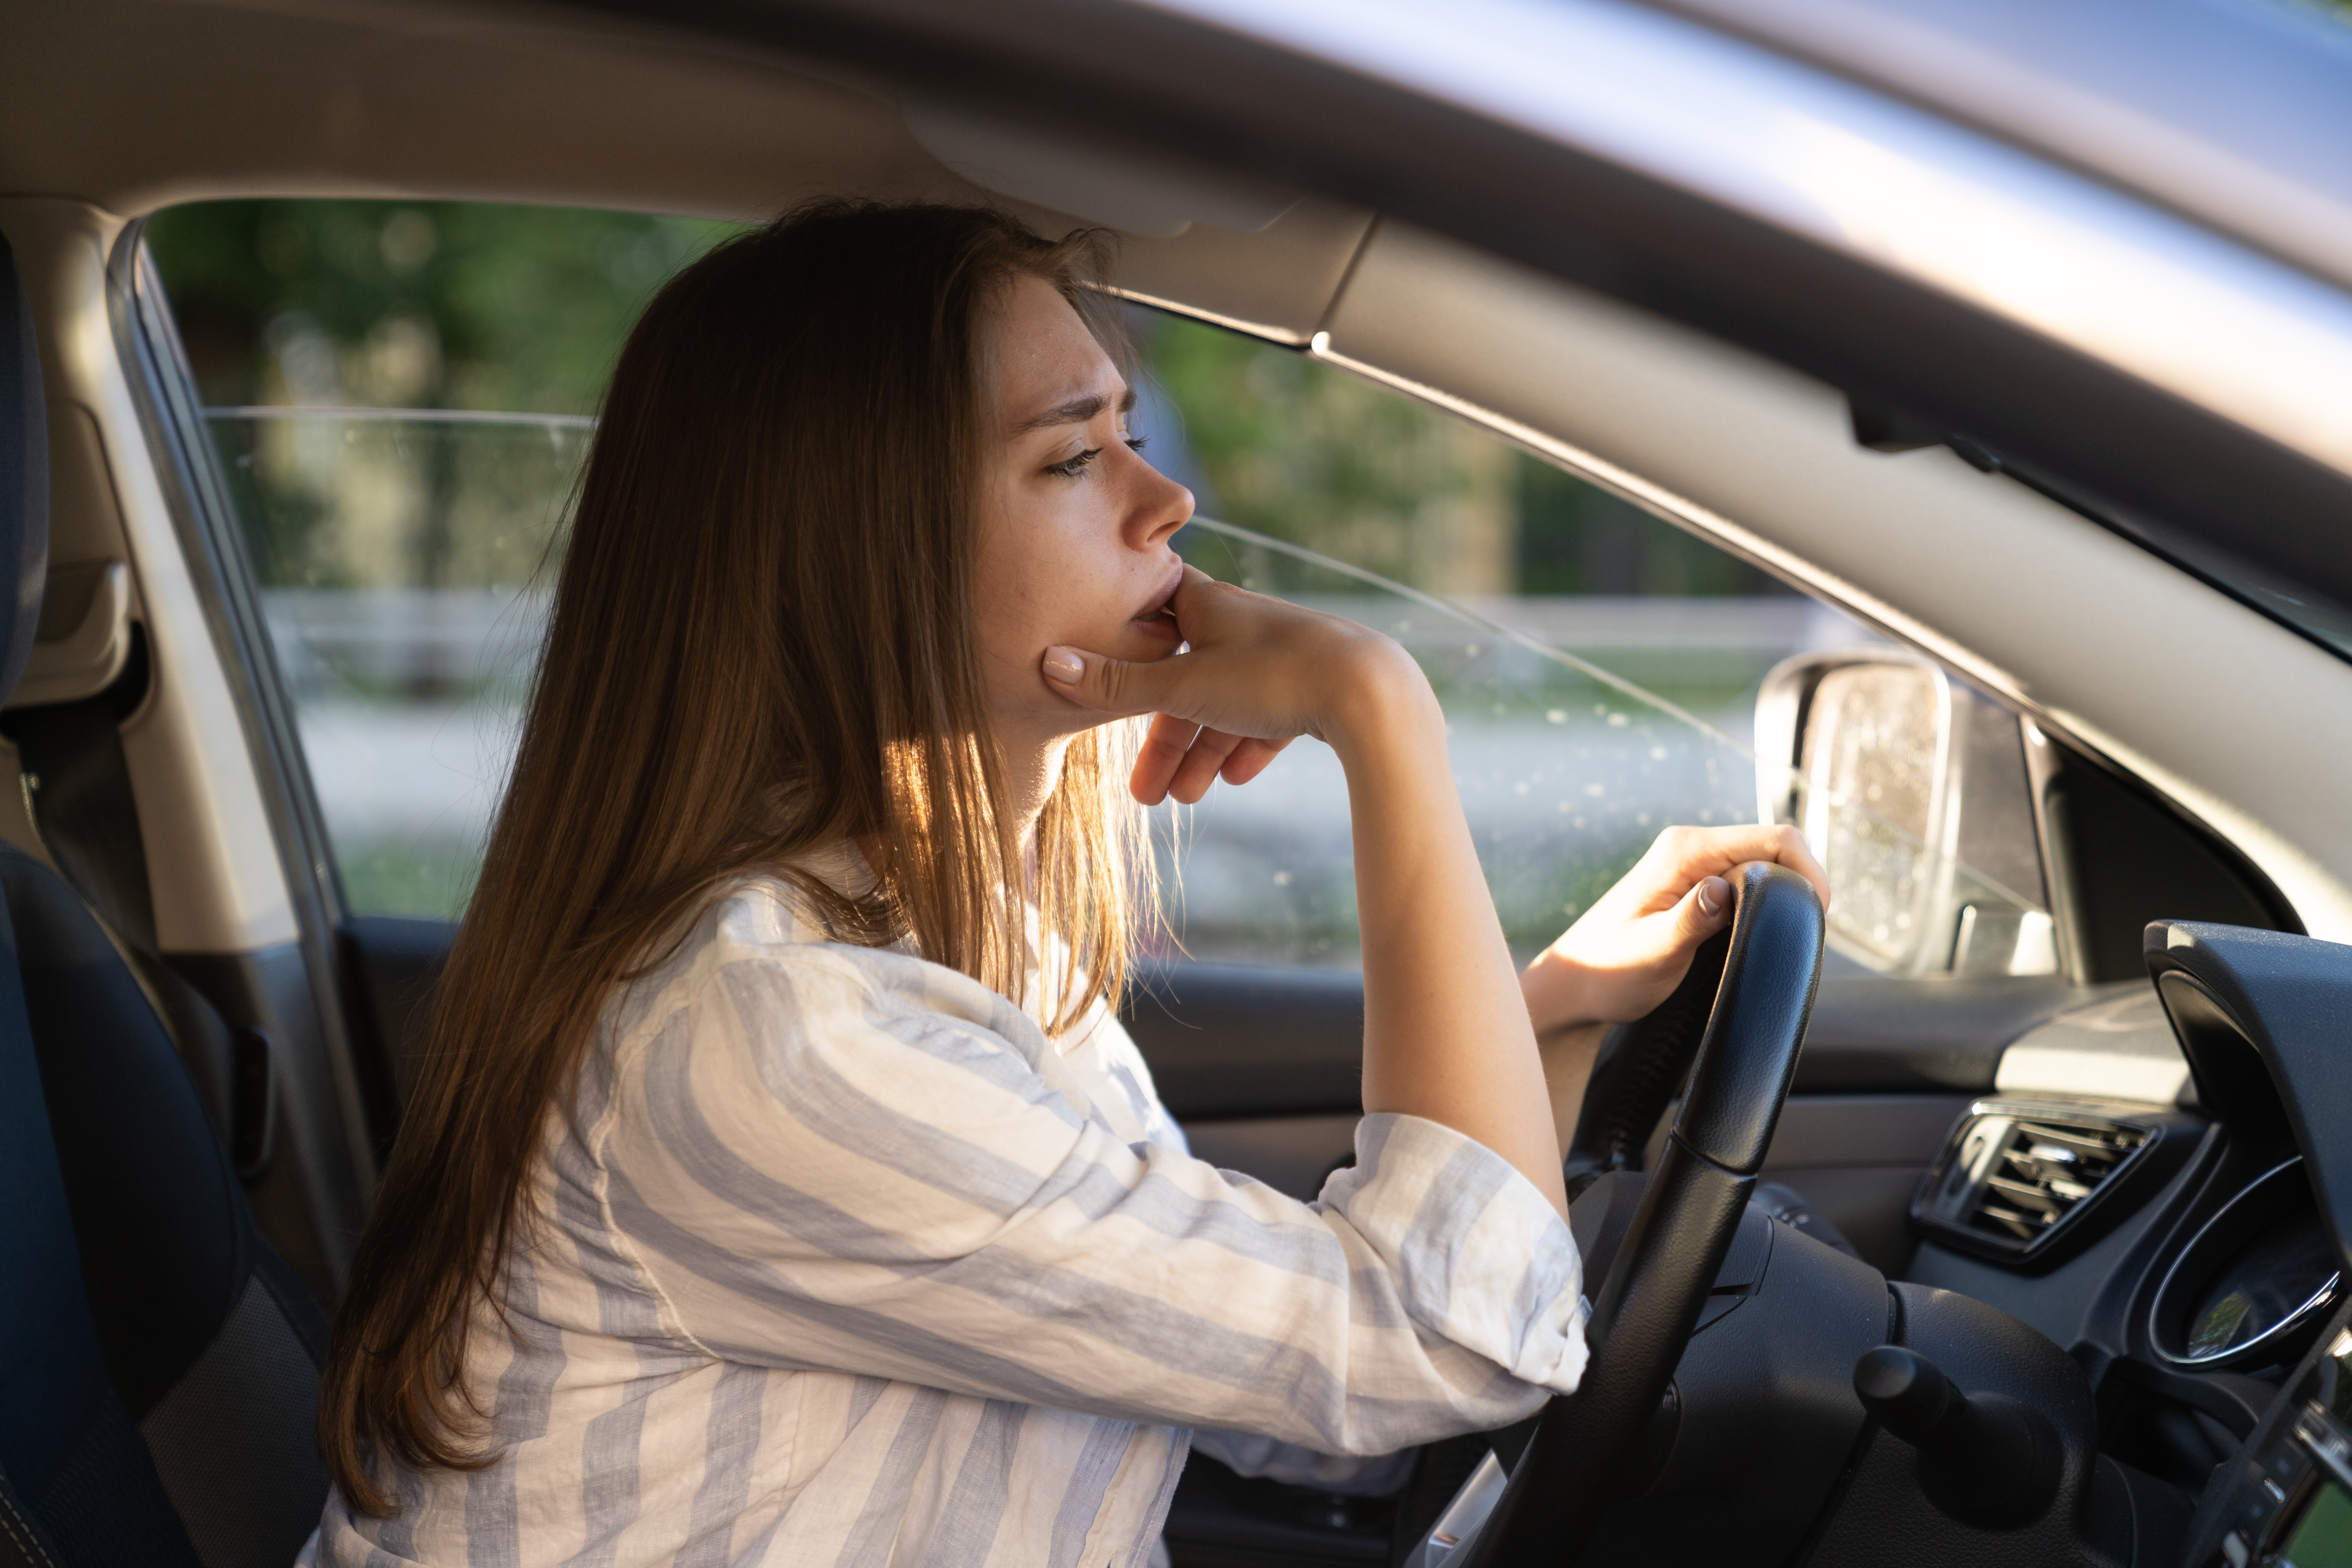 Une jeune femme triste et fatiguée au volant d'une voiture | Source : Shutterstock